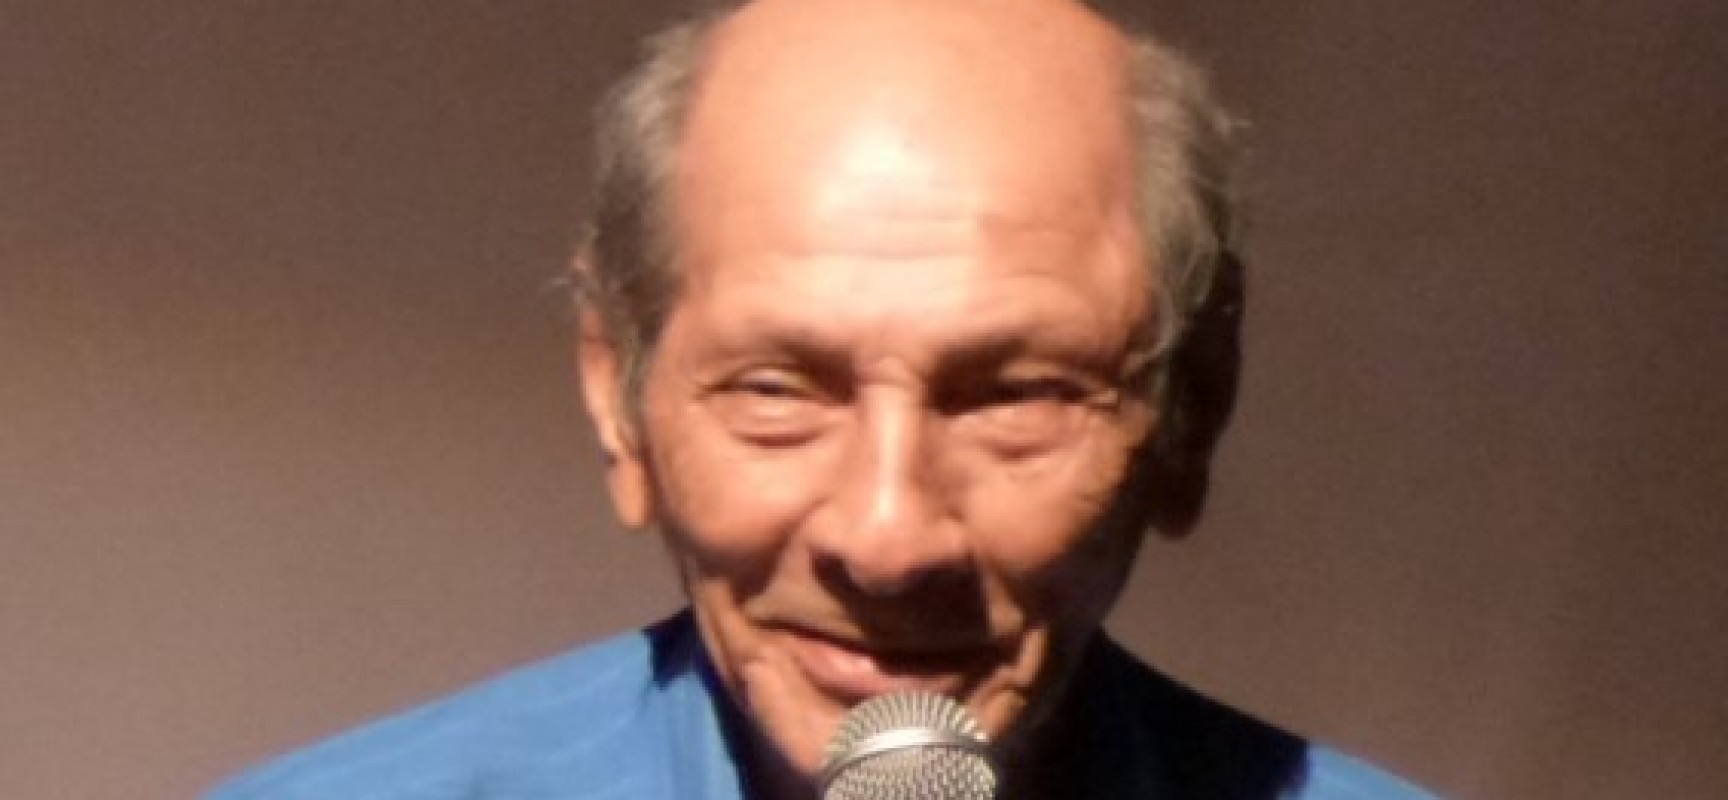 Radialista Zé Tiro-seco. Parabéns! 10 de fevereiro – 80 anos de idade